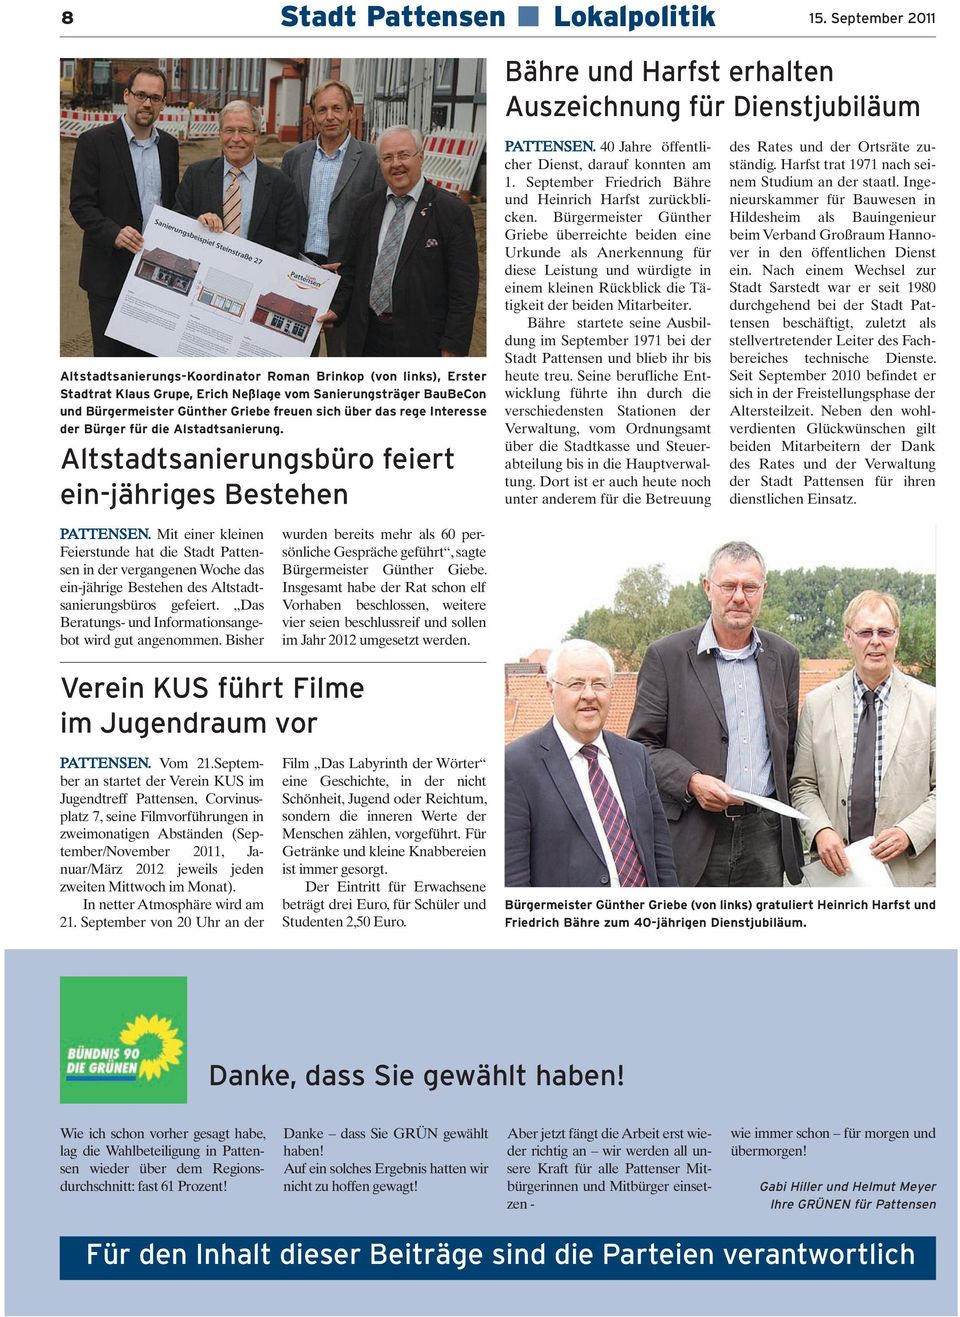 BauBeCon und Bürgermeister Günther Griebe freuen sich über das rege Interesse der Bürger für die Alstadtsanierung. Altstadtsanierungsbüro feiert ein-jähriges Bestehen PATTENSEN.